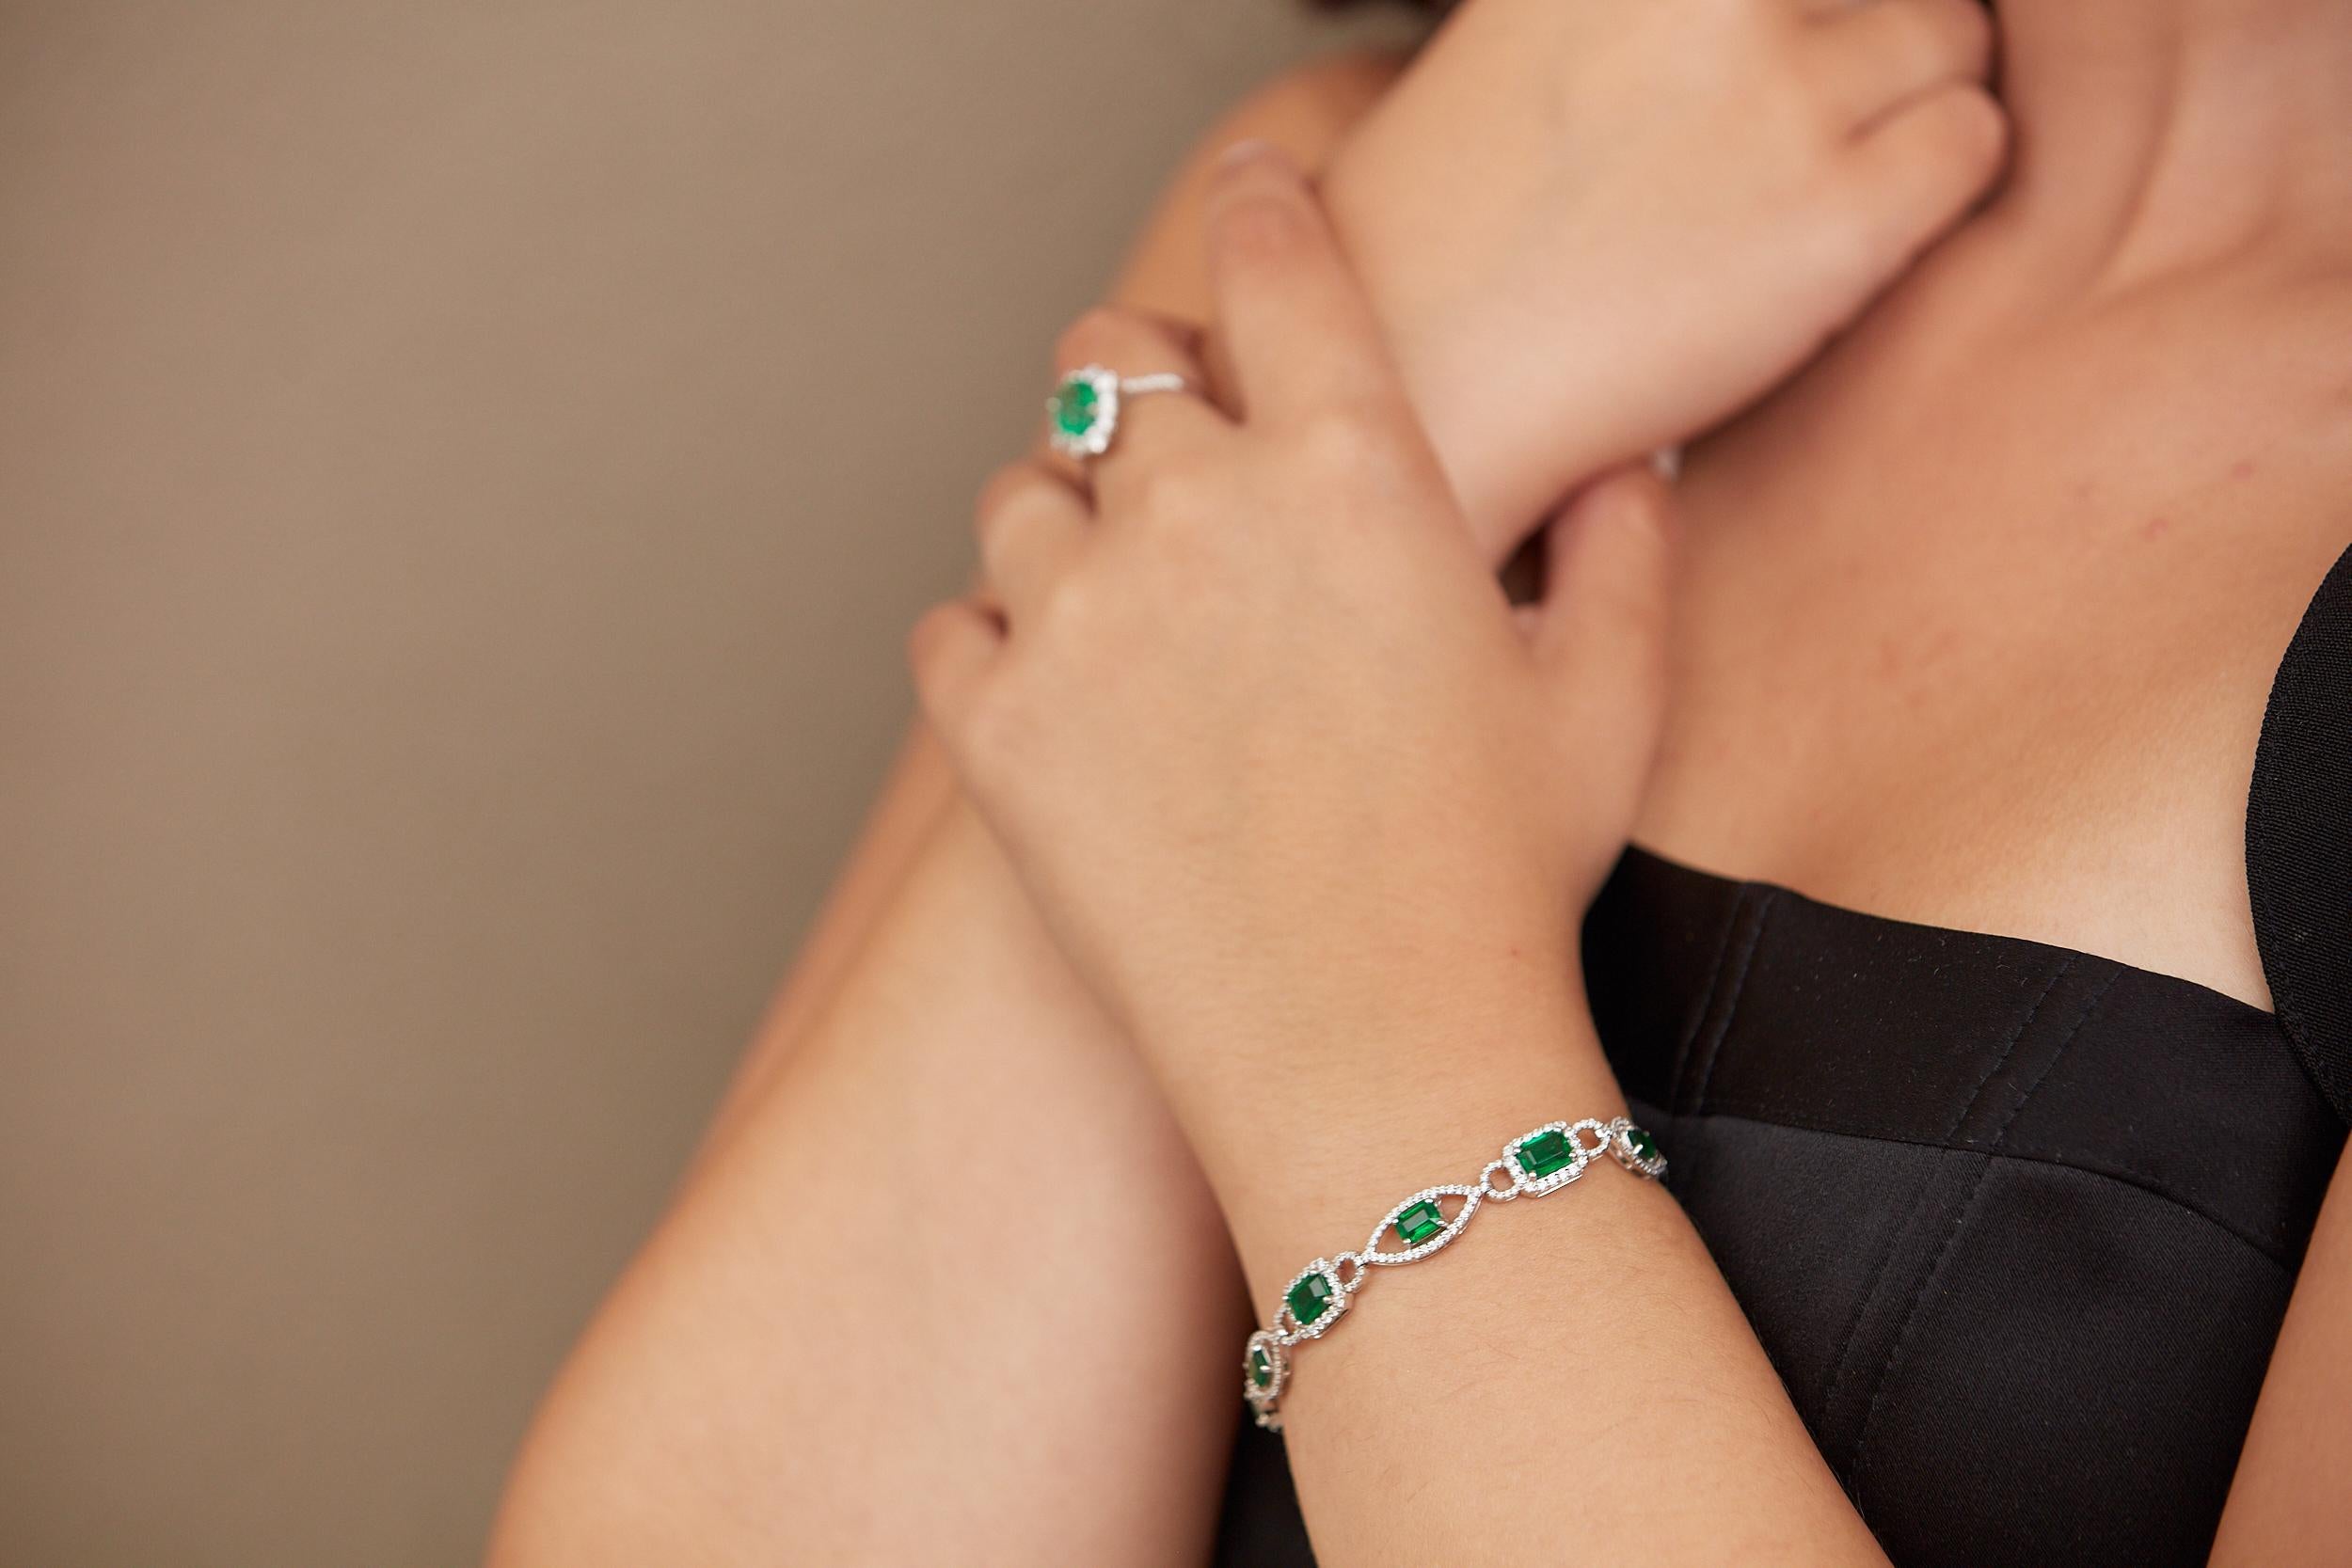 Le bracelet de diamants Tresor est composé d'un diamant de 1,96 ct et d'une émeraude de 6,64 ct en or blanc 18k. Les bracelets sont une ode à la beauté luxueuse mais classique avec des diamants étincelants. Leur conception contemporaine et moderne